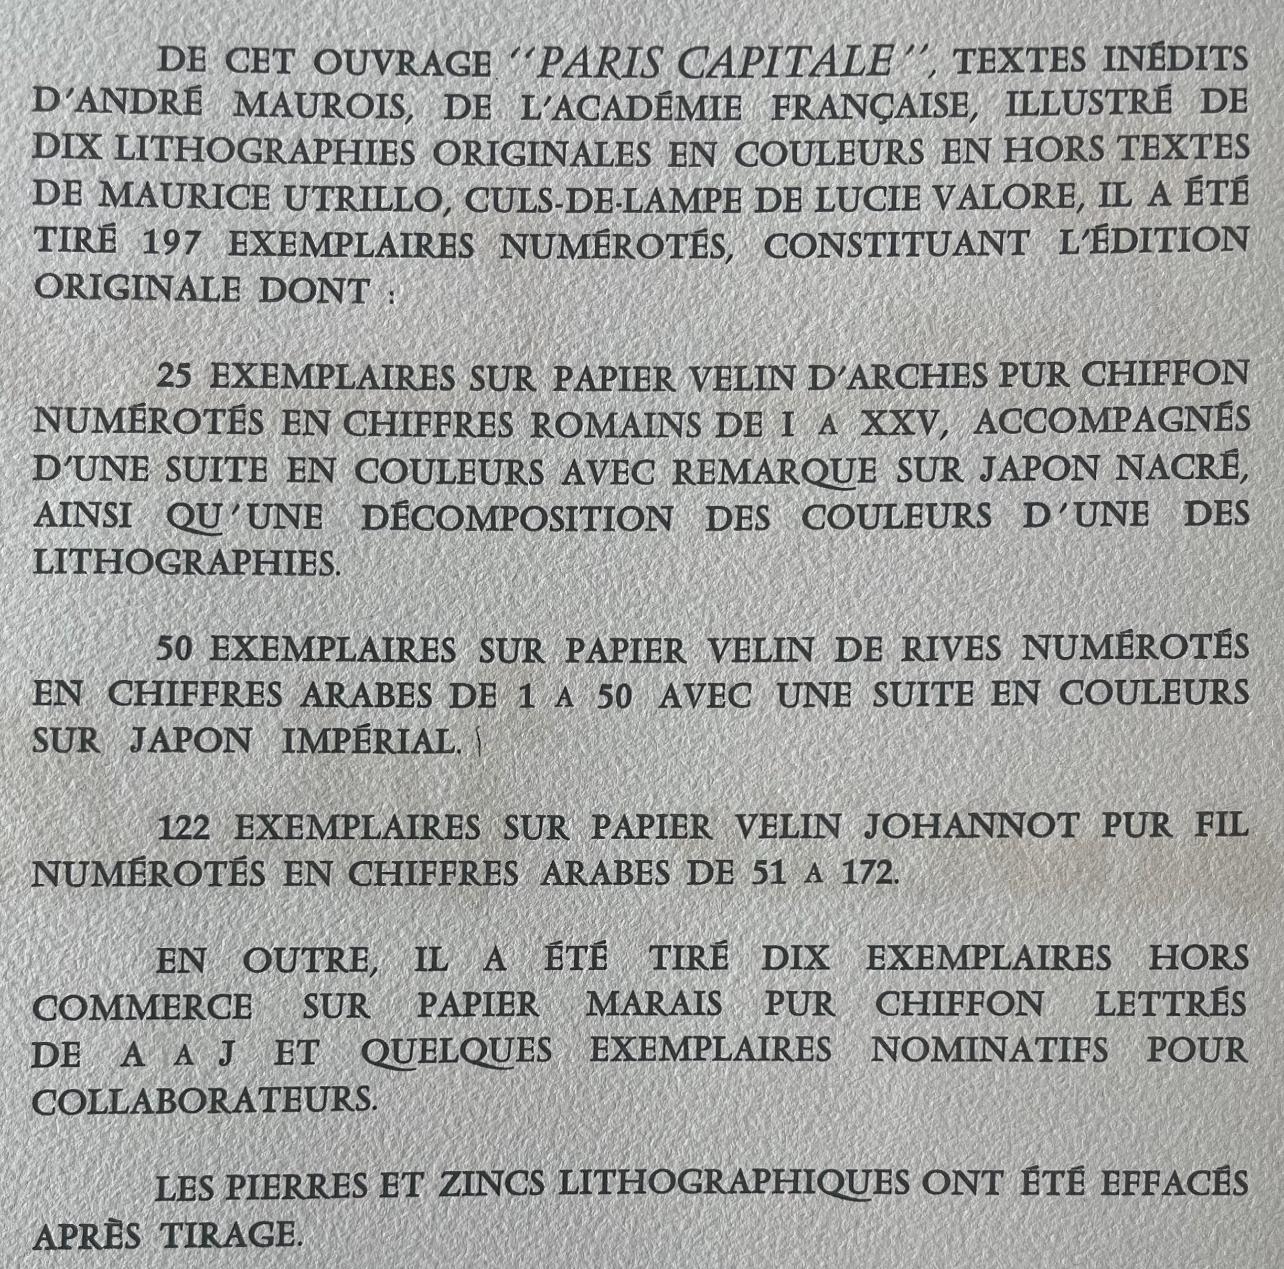 à la Comédie Française, Paris Capitale, Maurice Utrillo For Sale 7